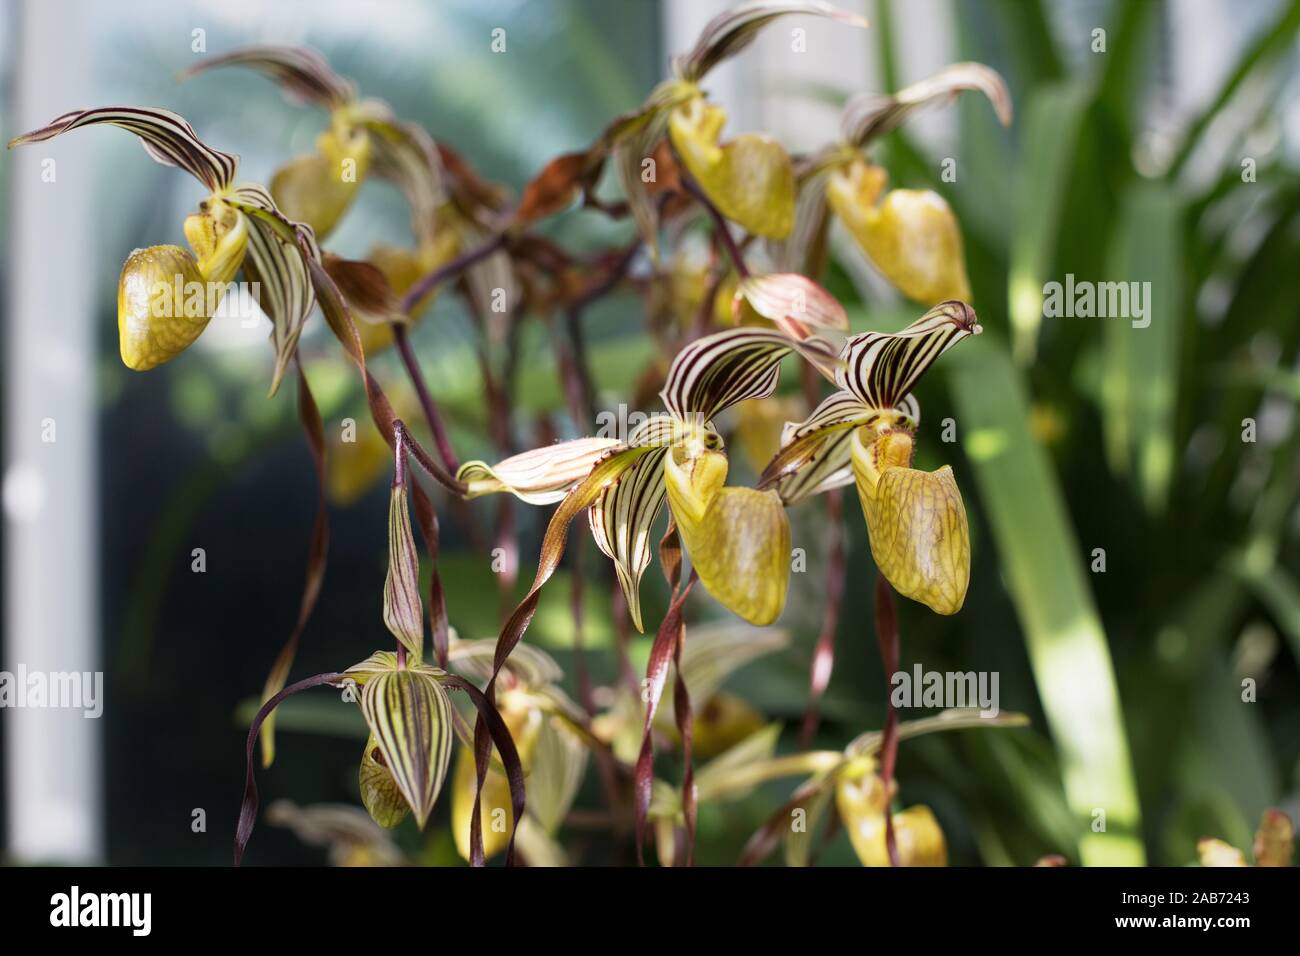 Paphiopedilum topperi x laevigatum orchid. Stock Photo